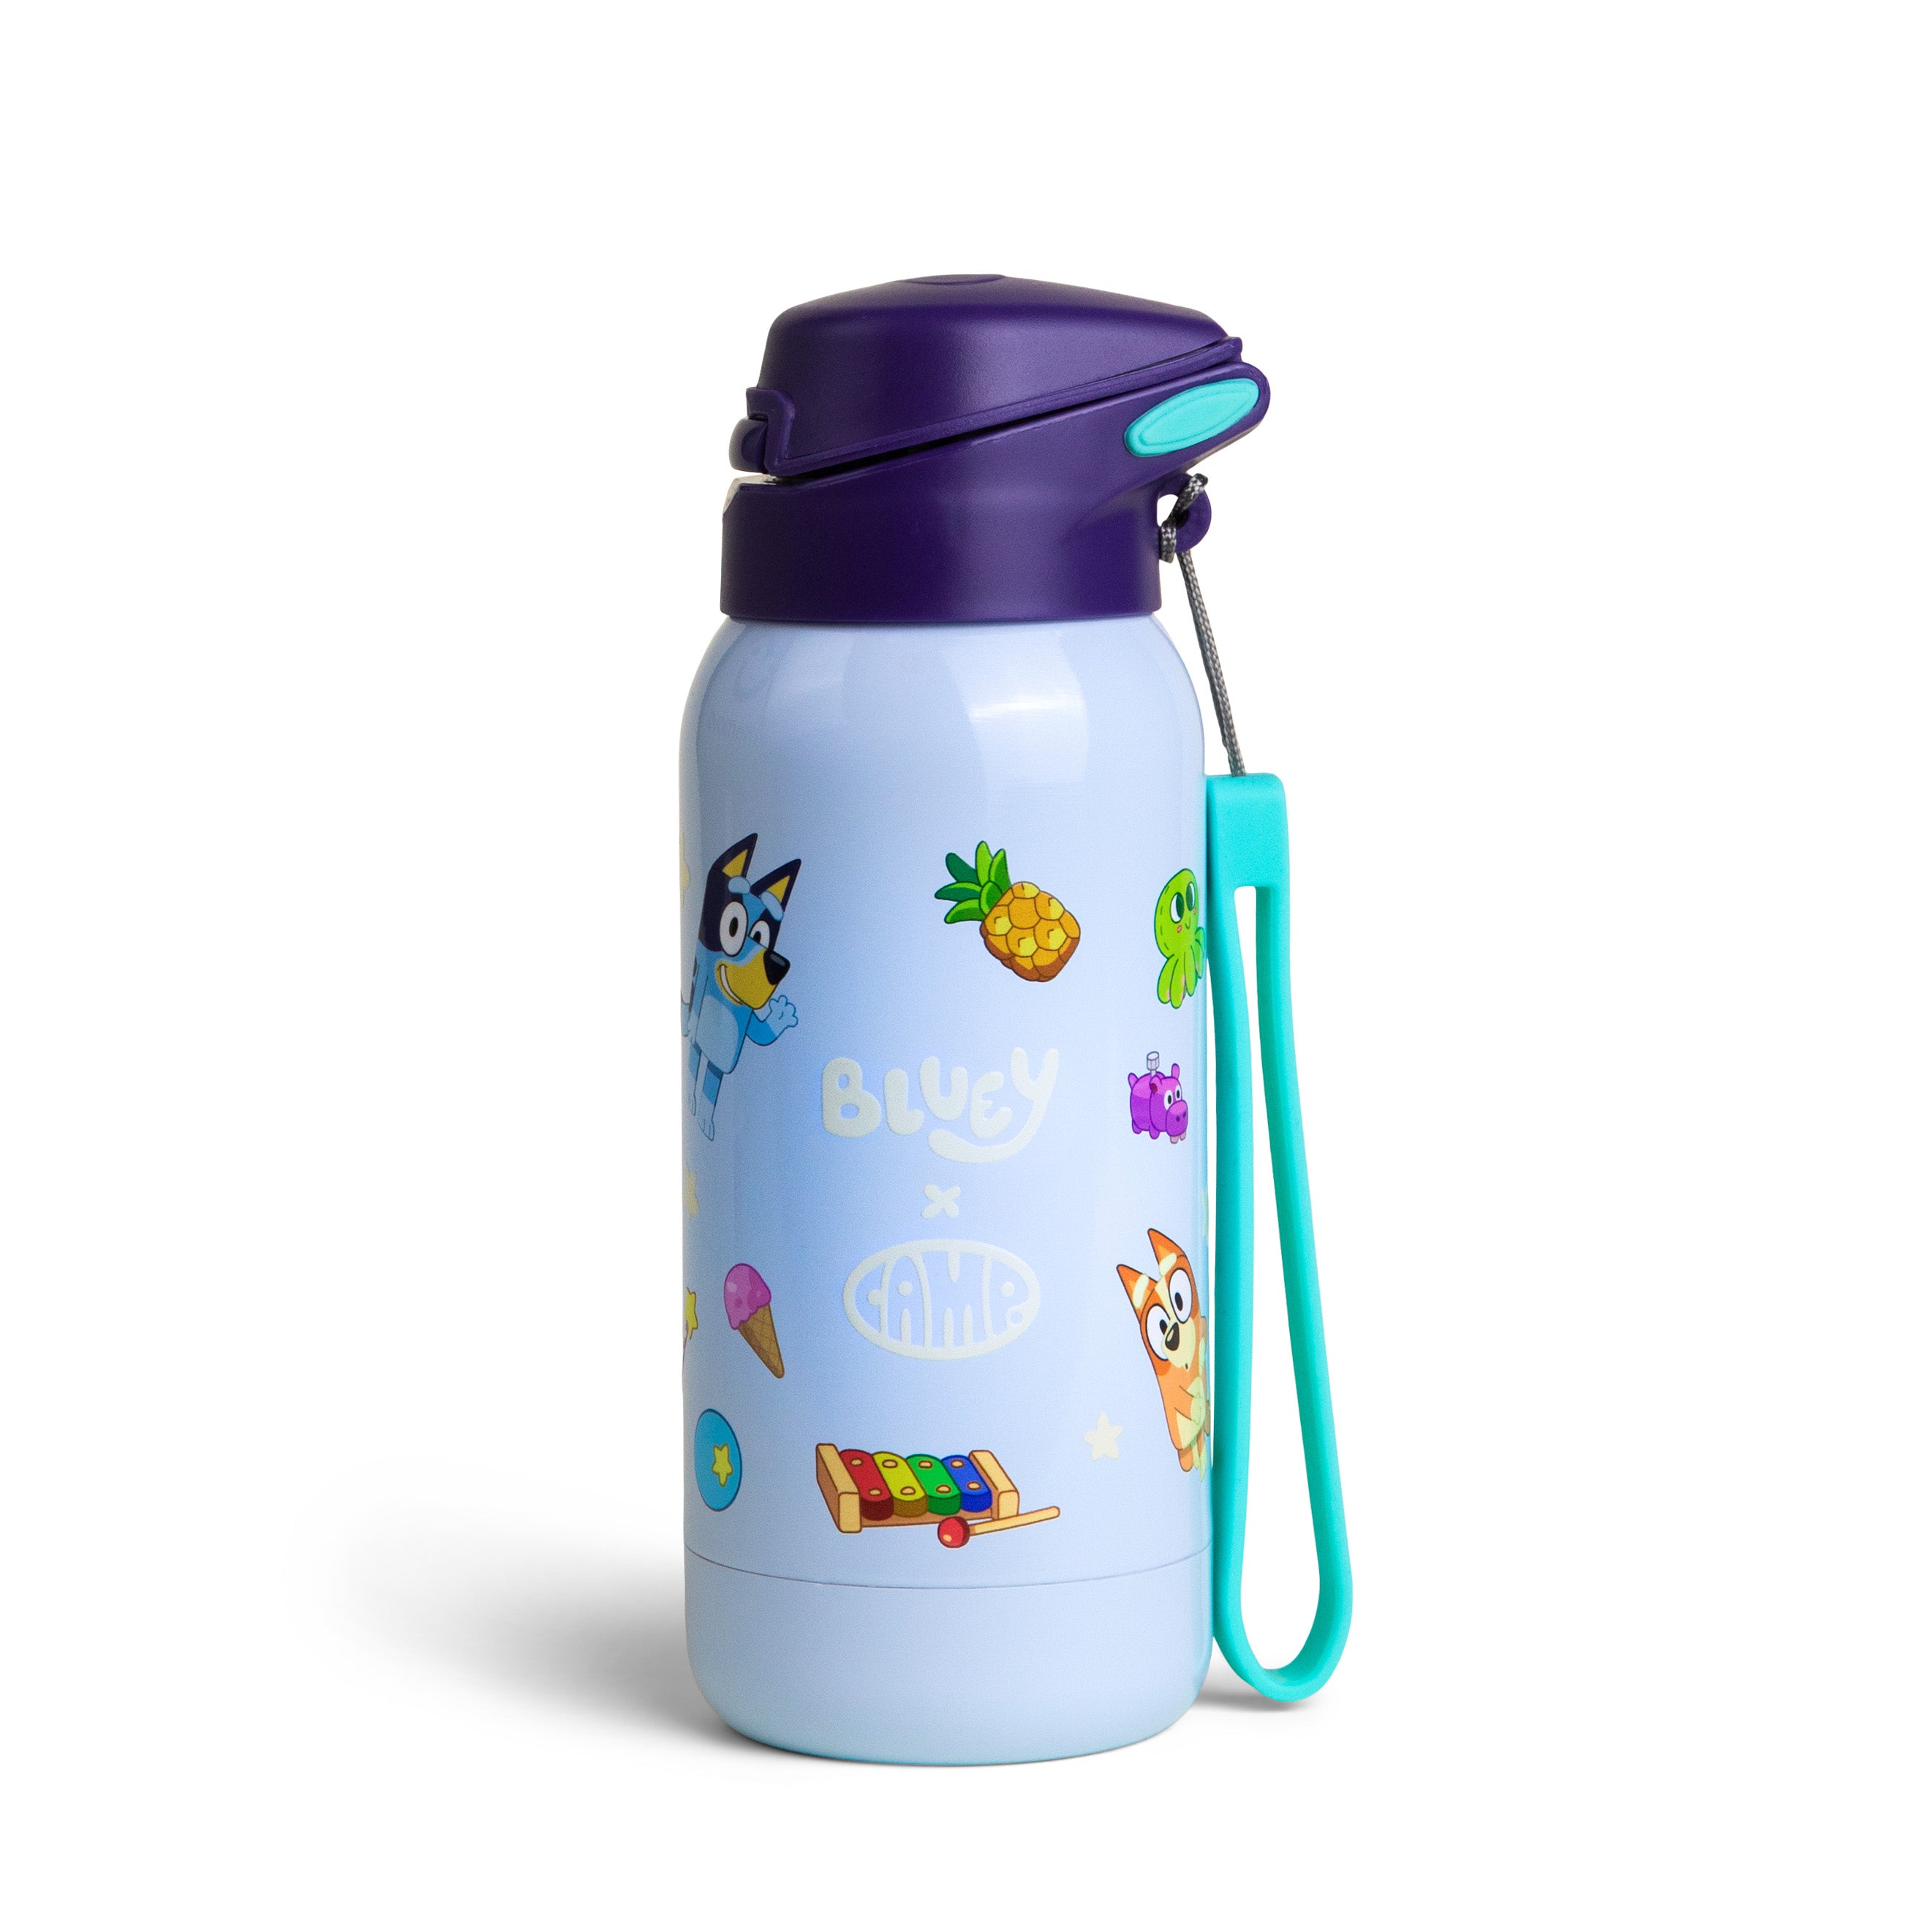 Bluey x CAMP Kids' Water Bottle - Bingo